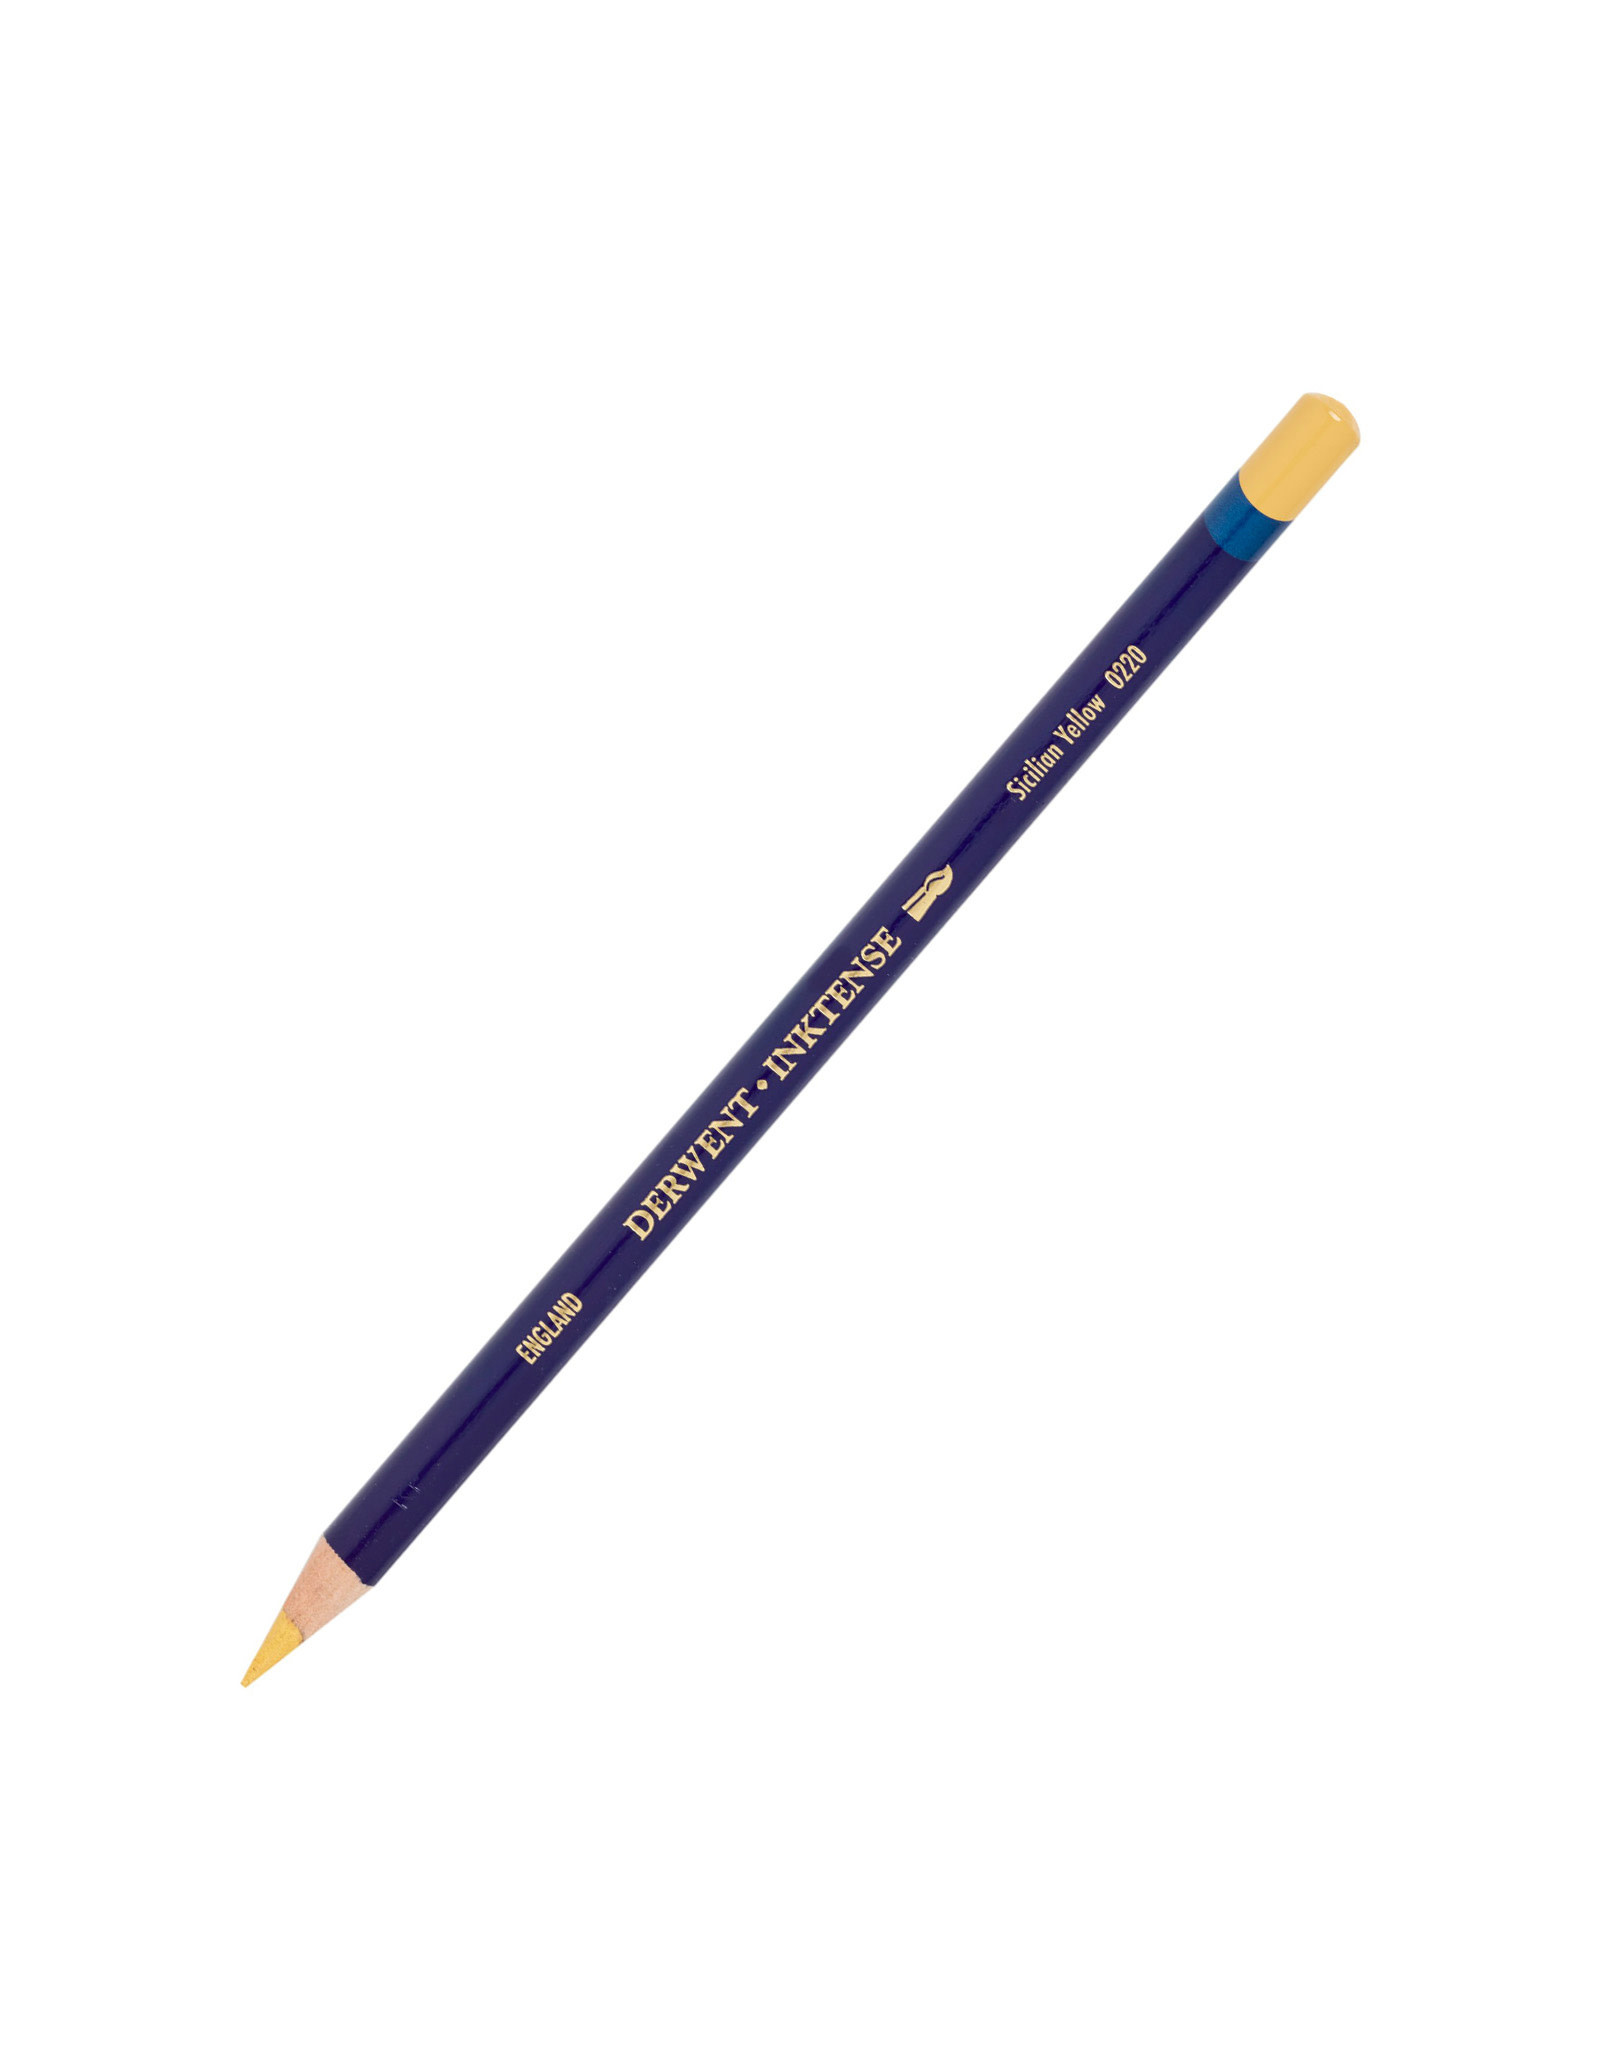 Derwent Derwent Inktense Pencil, Sicilian Yellow